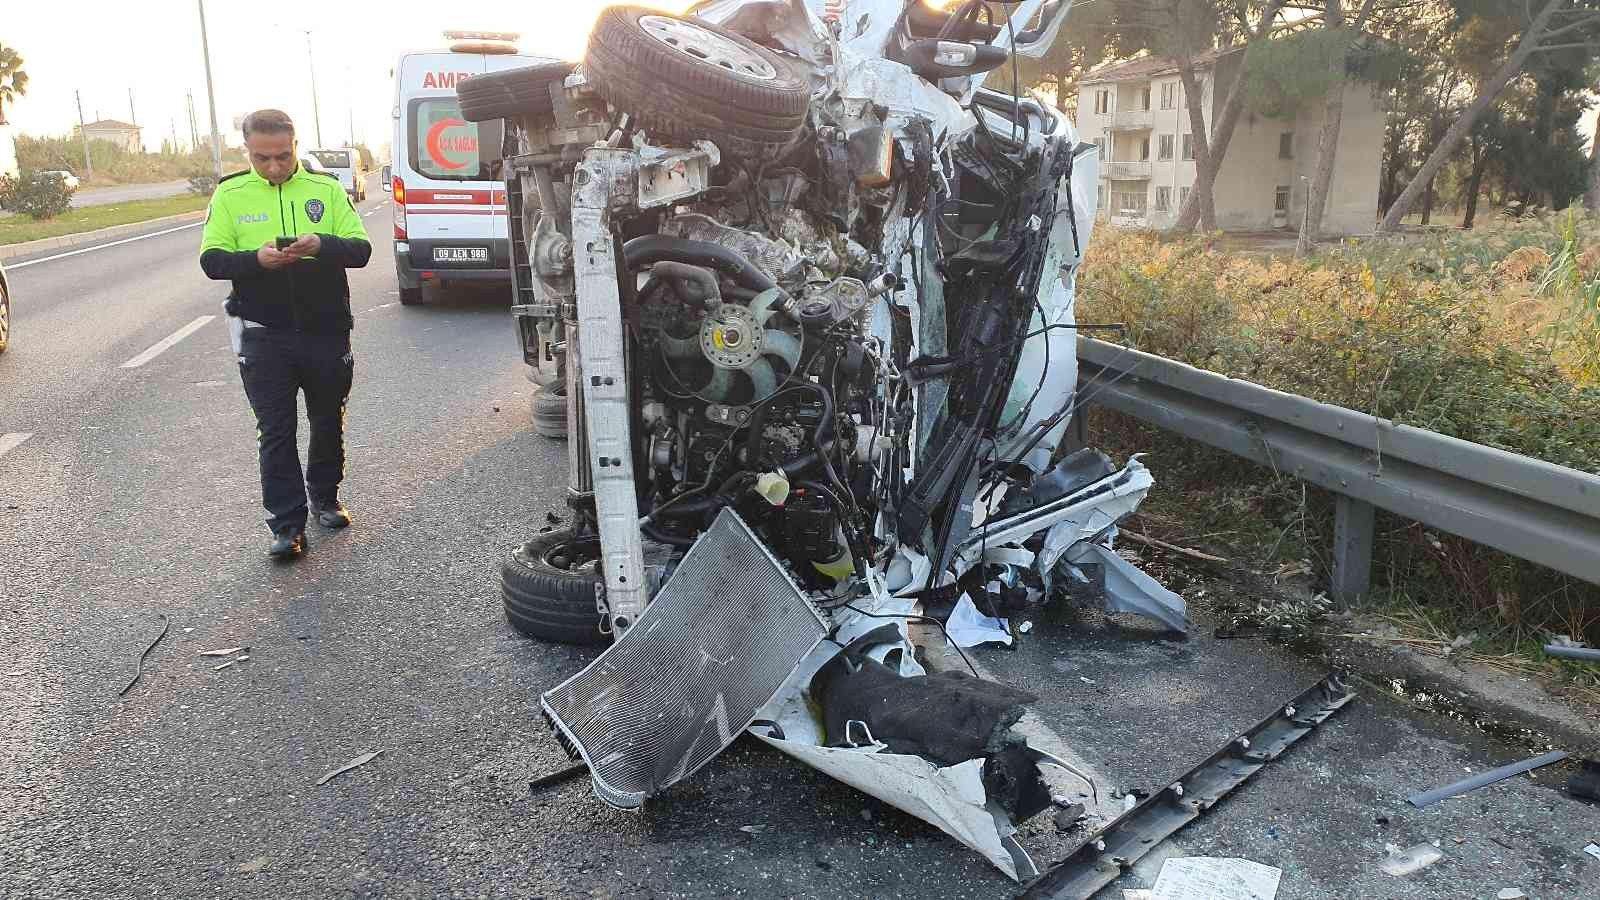 Aydın’da zincirleme trafik kazası: 1’i ağır 22 yaralı #aydin